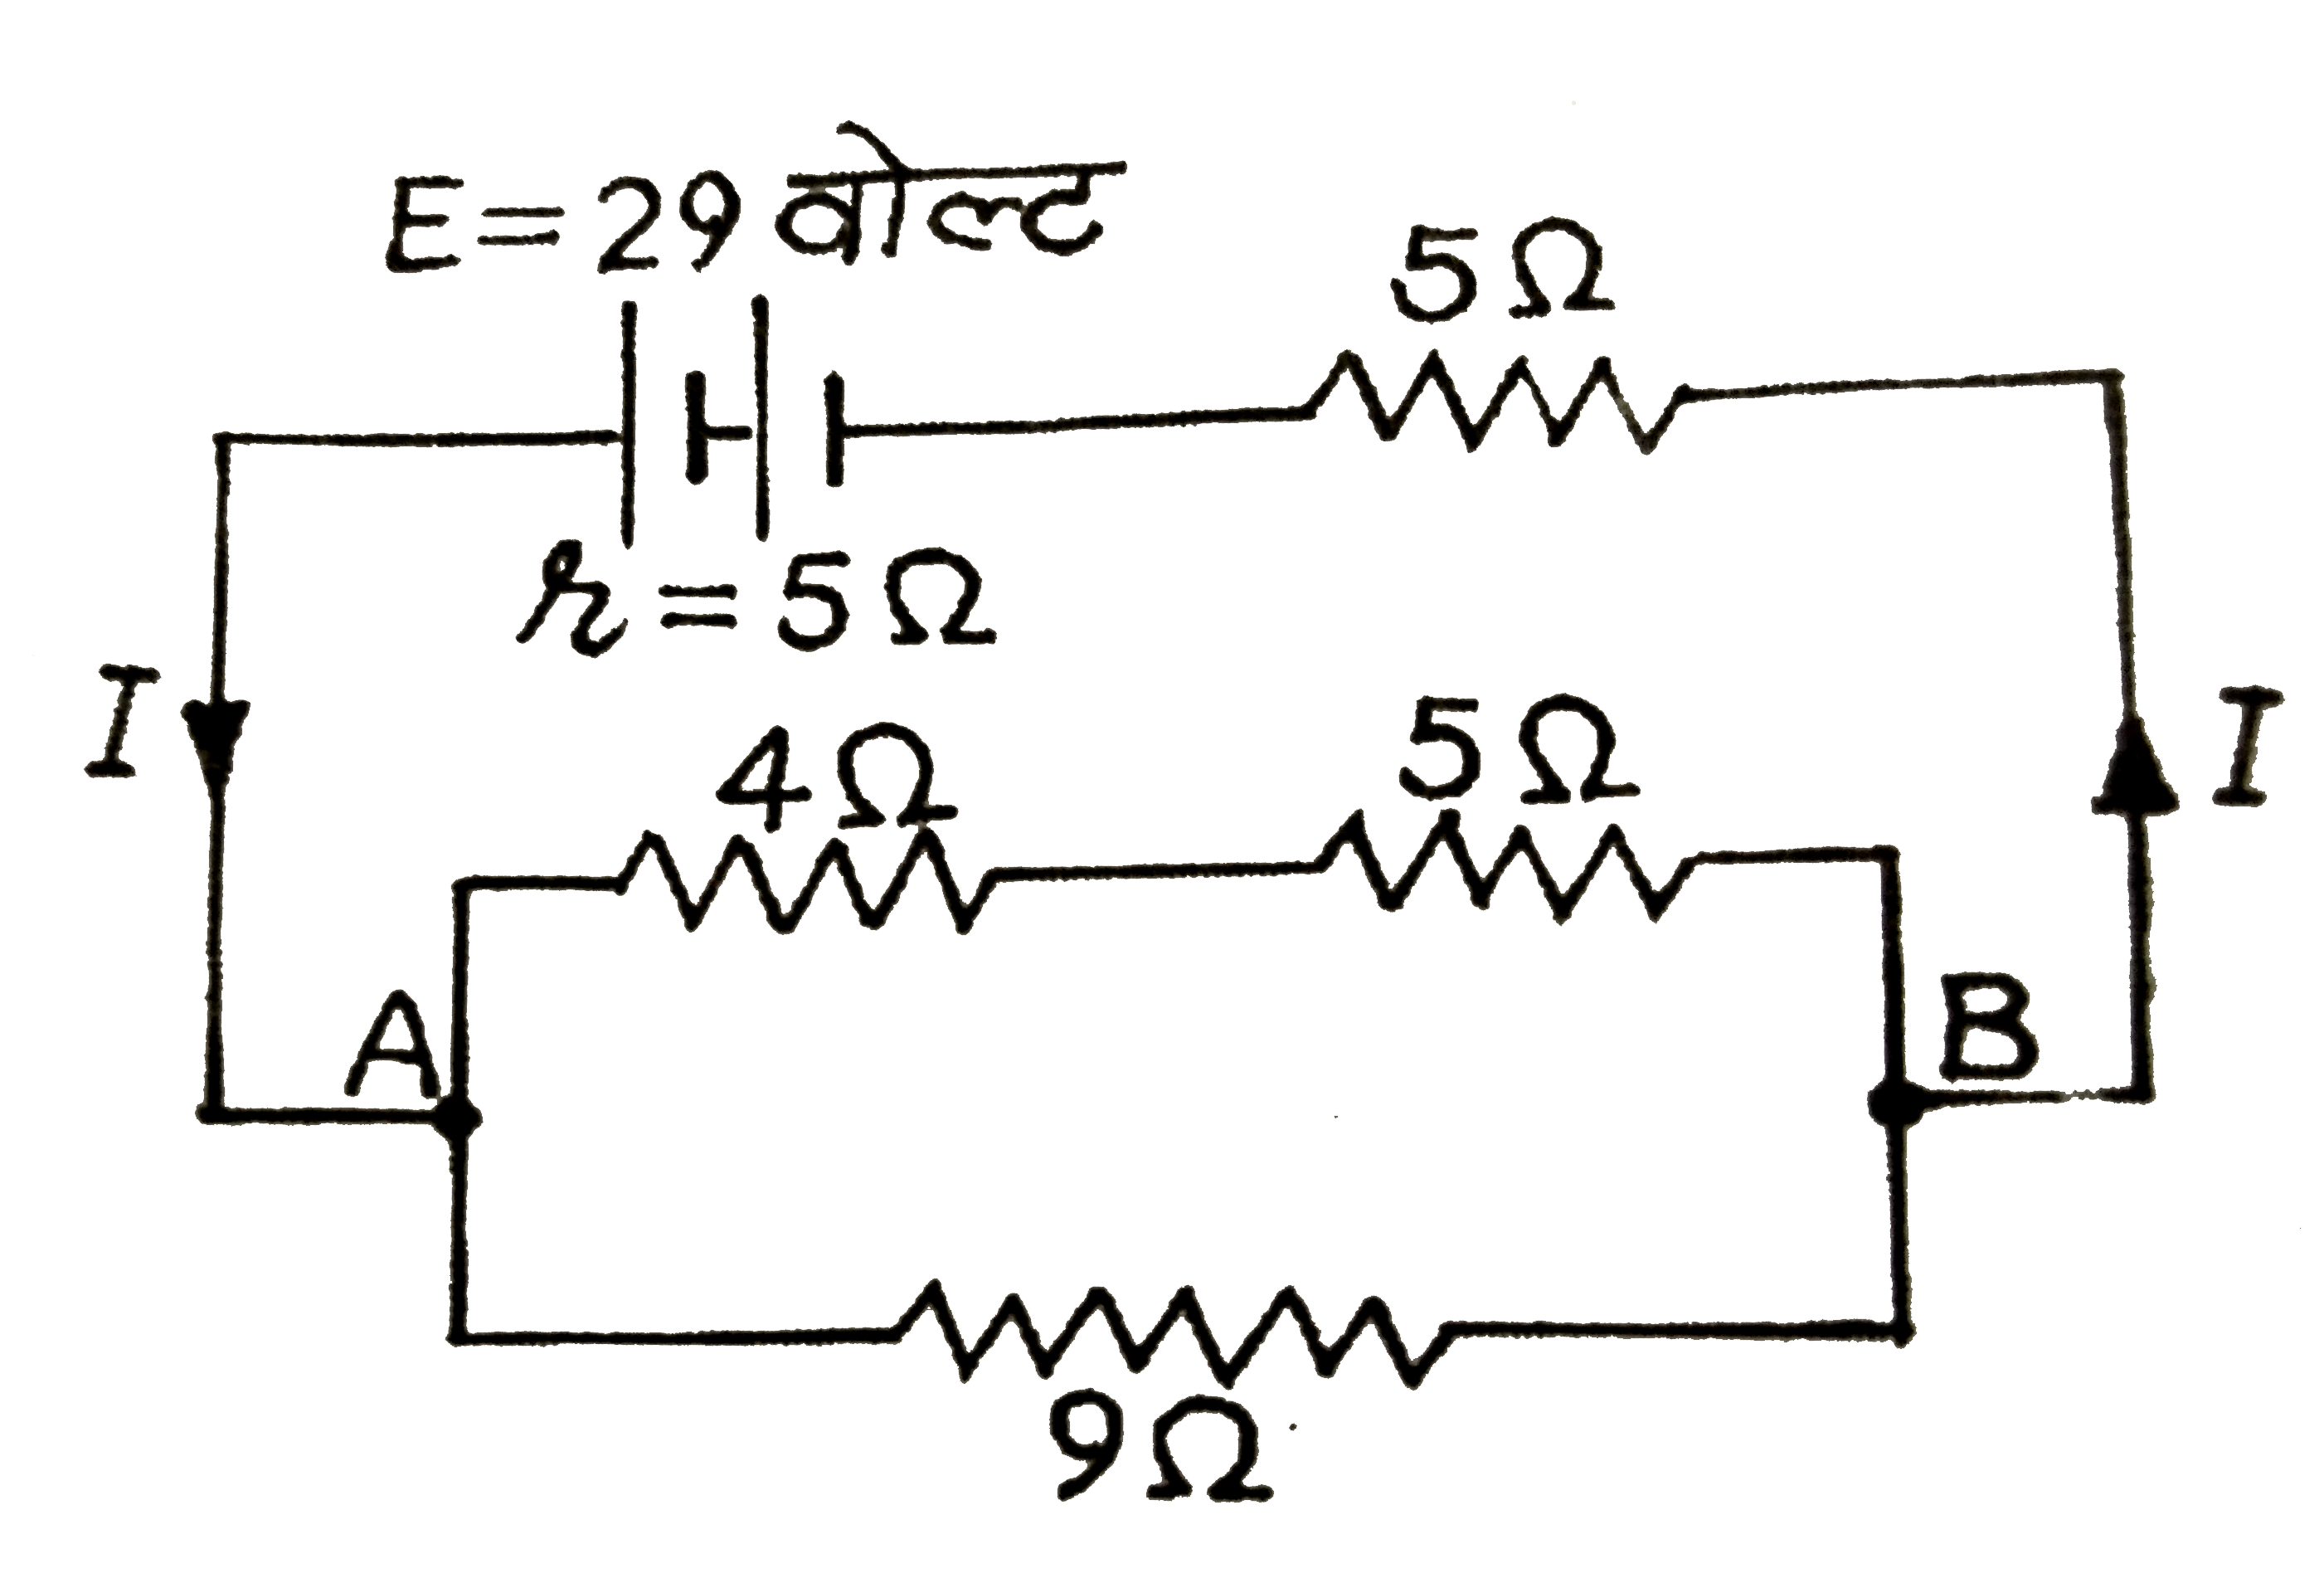 दिये  गये  वैधुत  परिपथ  में सेल  का आन्तरिक प्रतिरोध  5 ओम  है  तथा  वि०  वा ०  बल  29   वोल्ट  है  ज्ञात  कीजिये  : (i )  परिपथ  का सम्पूर्ण  प्रतिरोध  (ii )  परिपथ  की  धारा  ,(iii )  बिन्दुओ  A   व  B  के  बीच  विभान्तर  ।